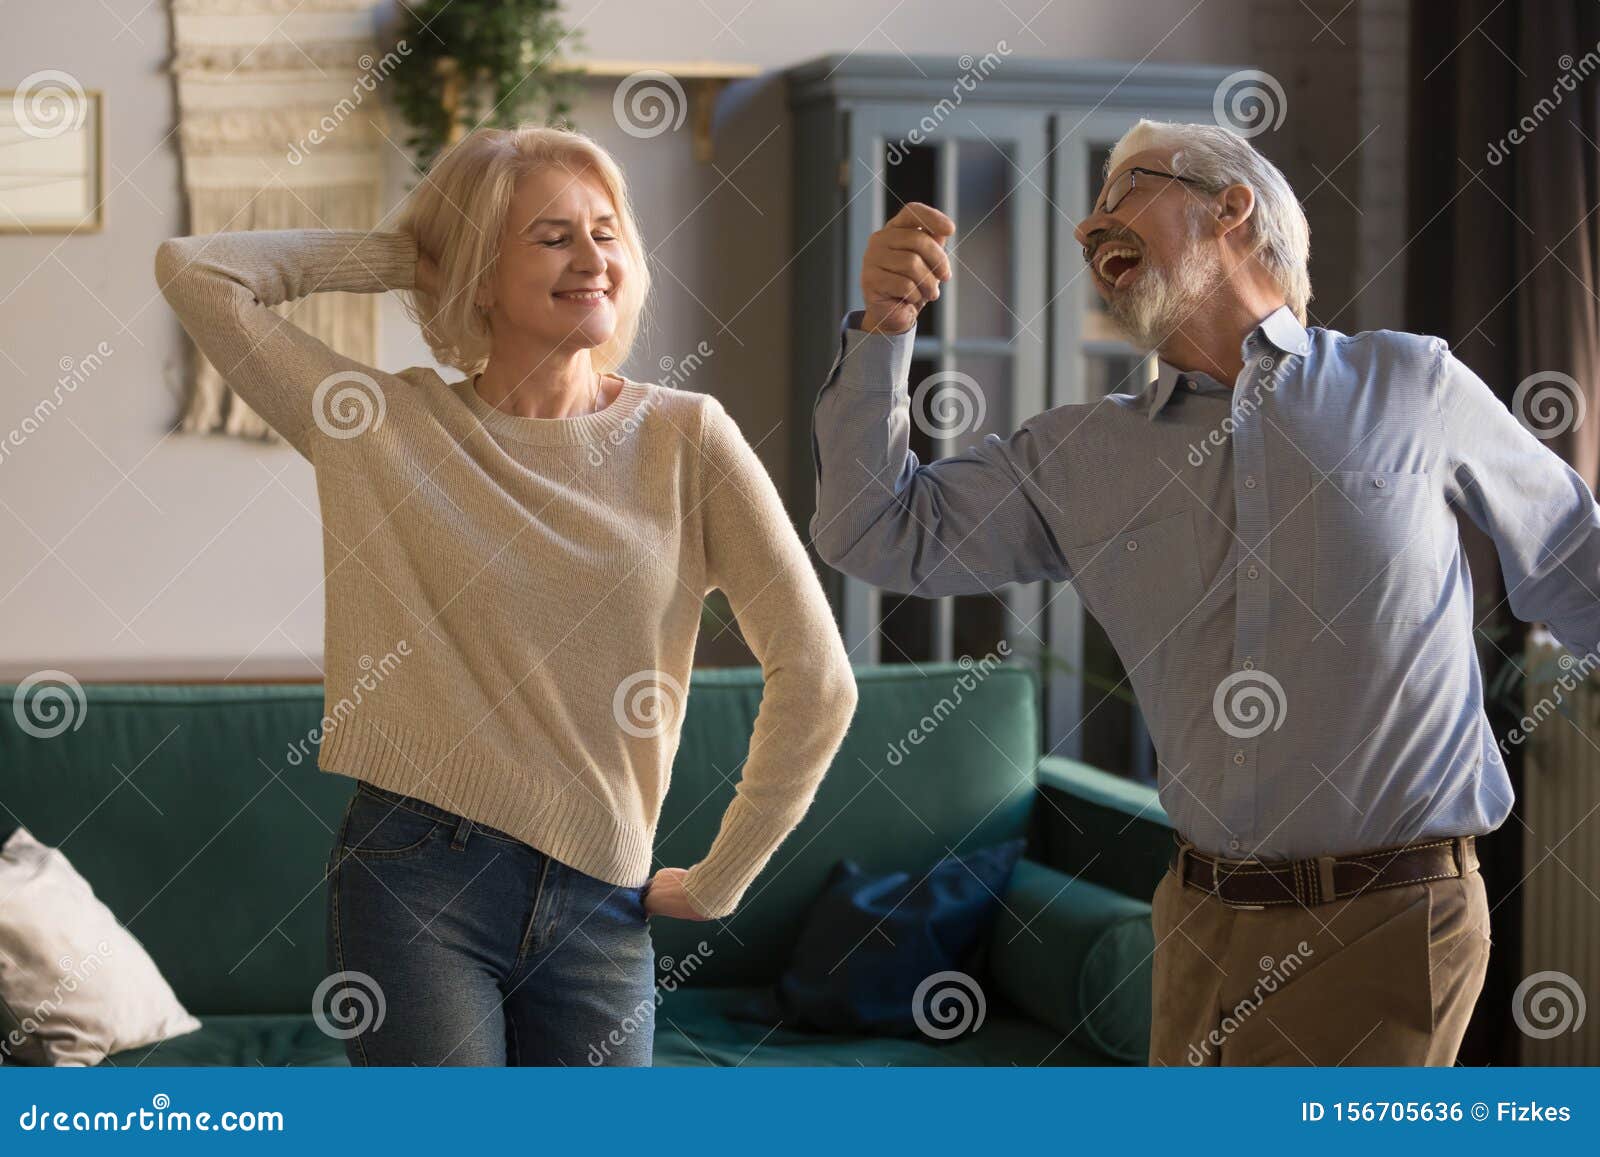 happy active retired elder couple dancing together in living room